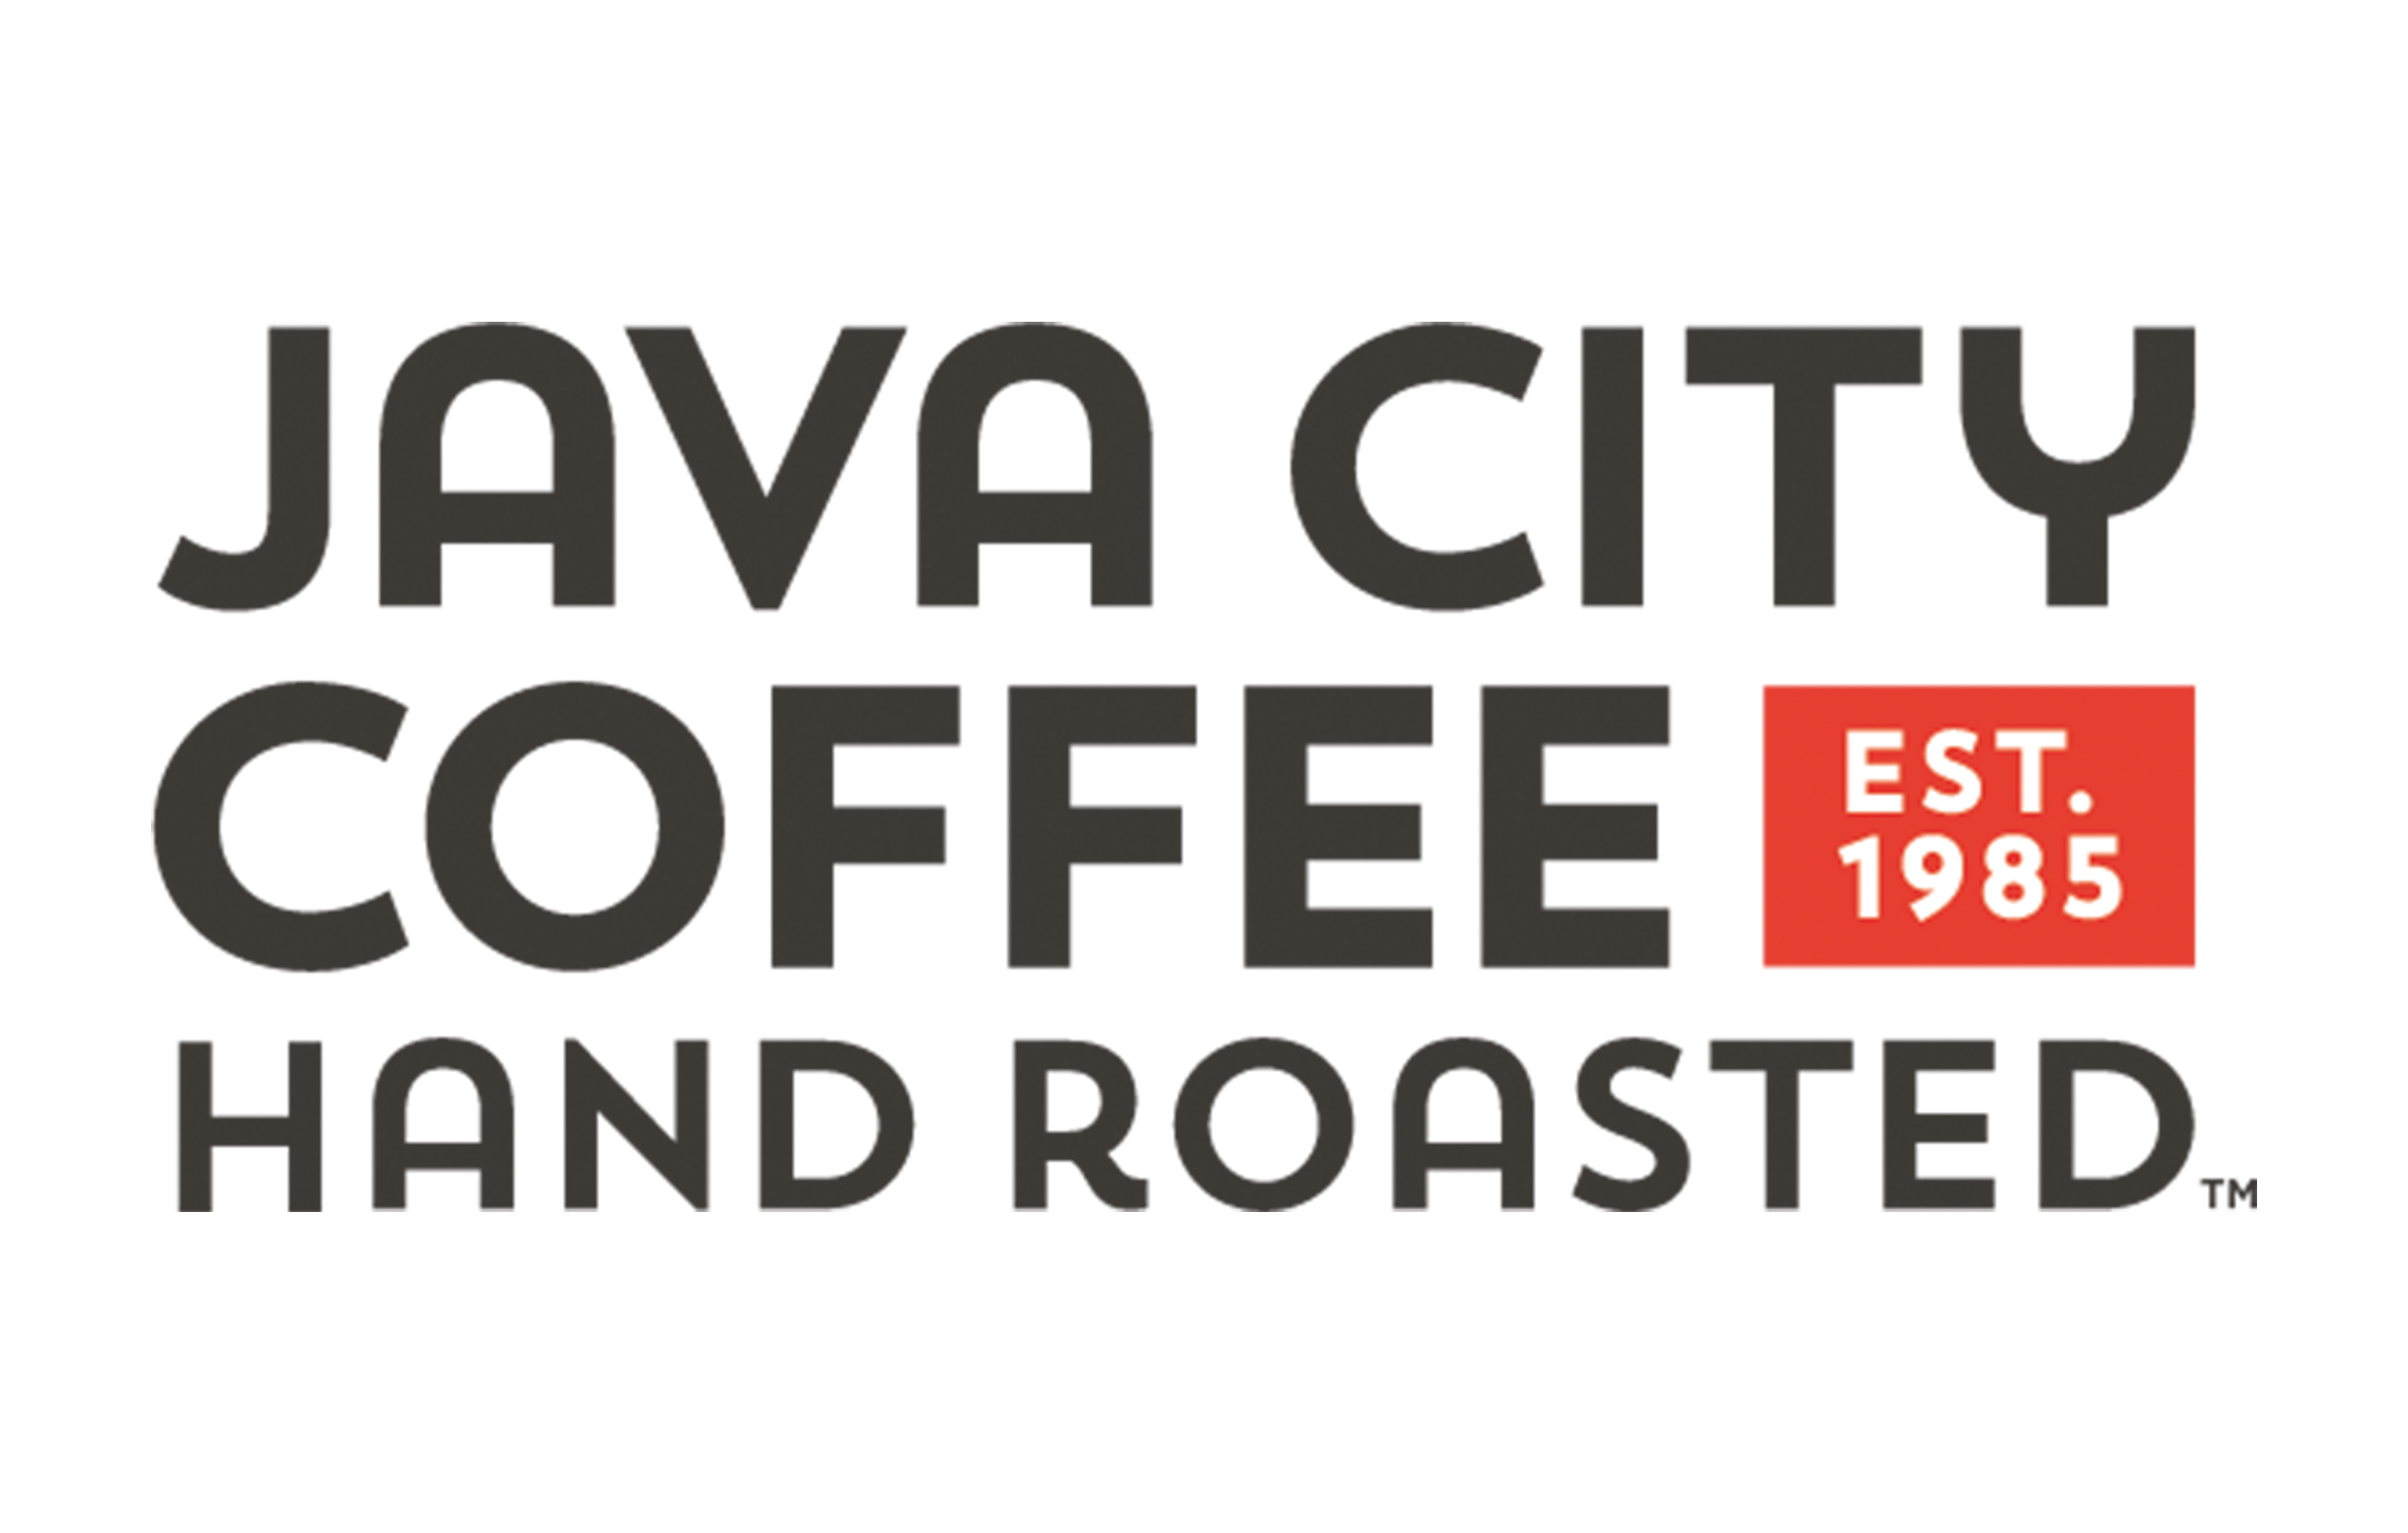 Java City Coffee Hand Roasted Est. 1985